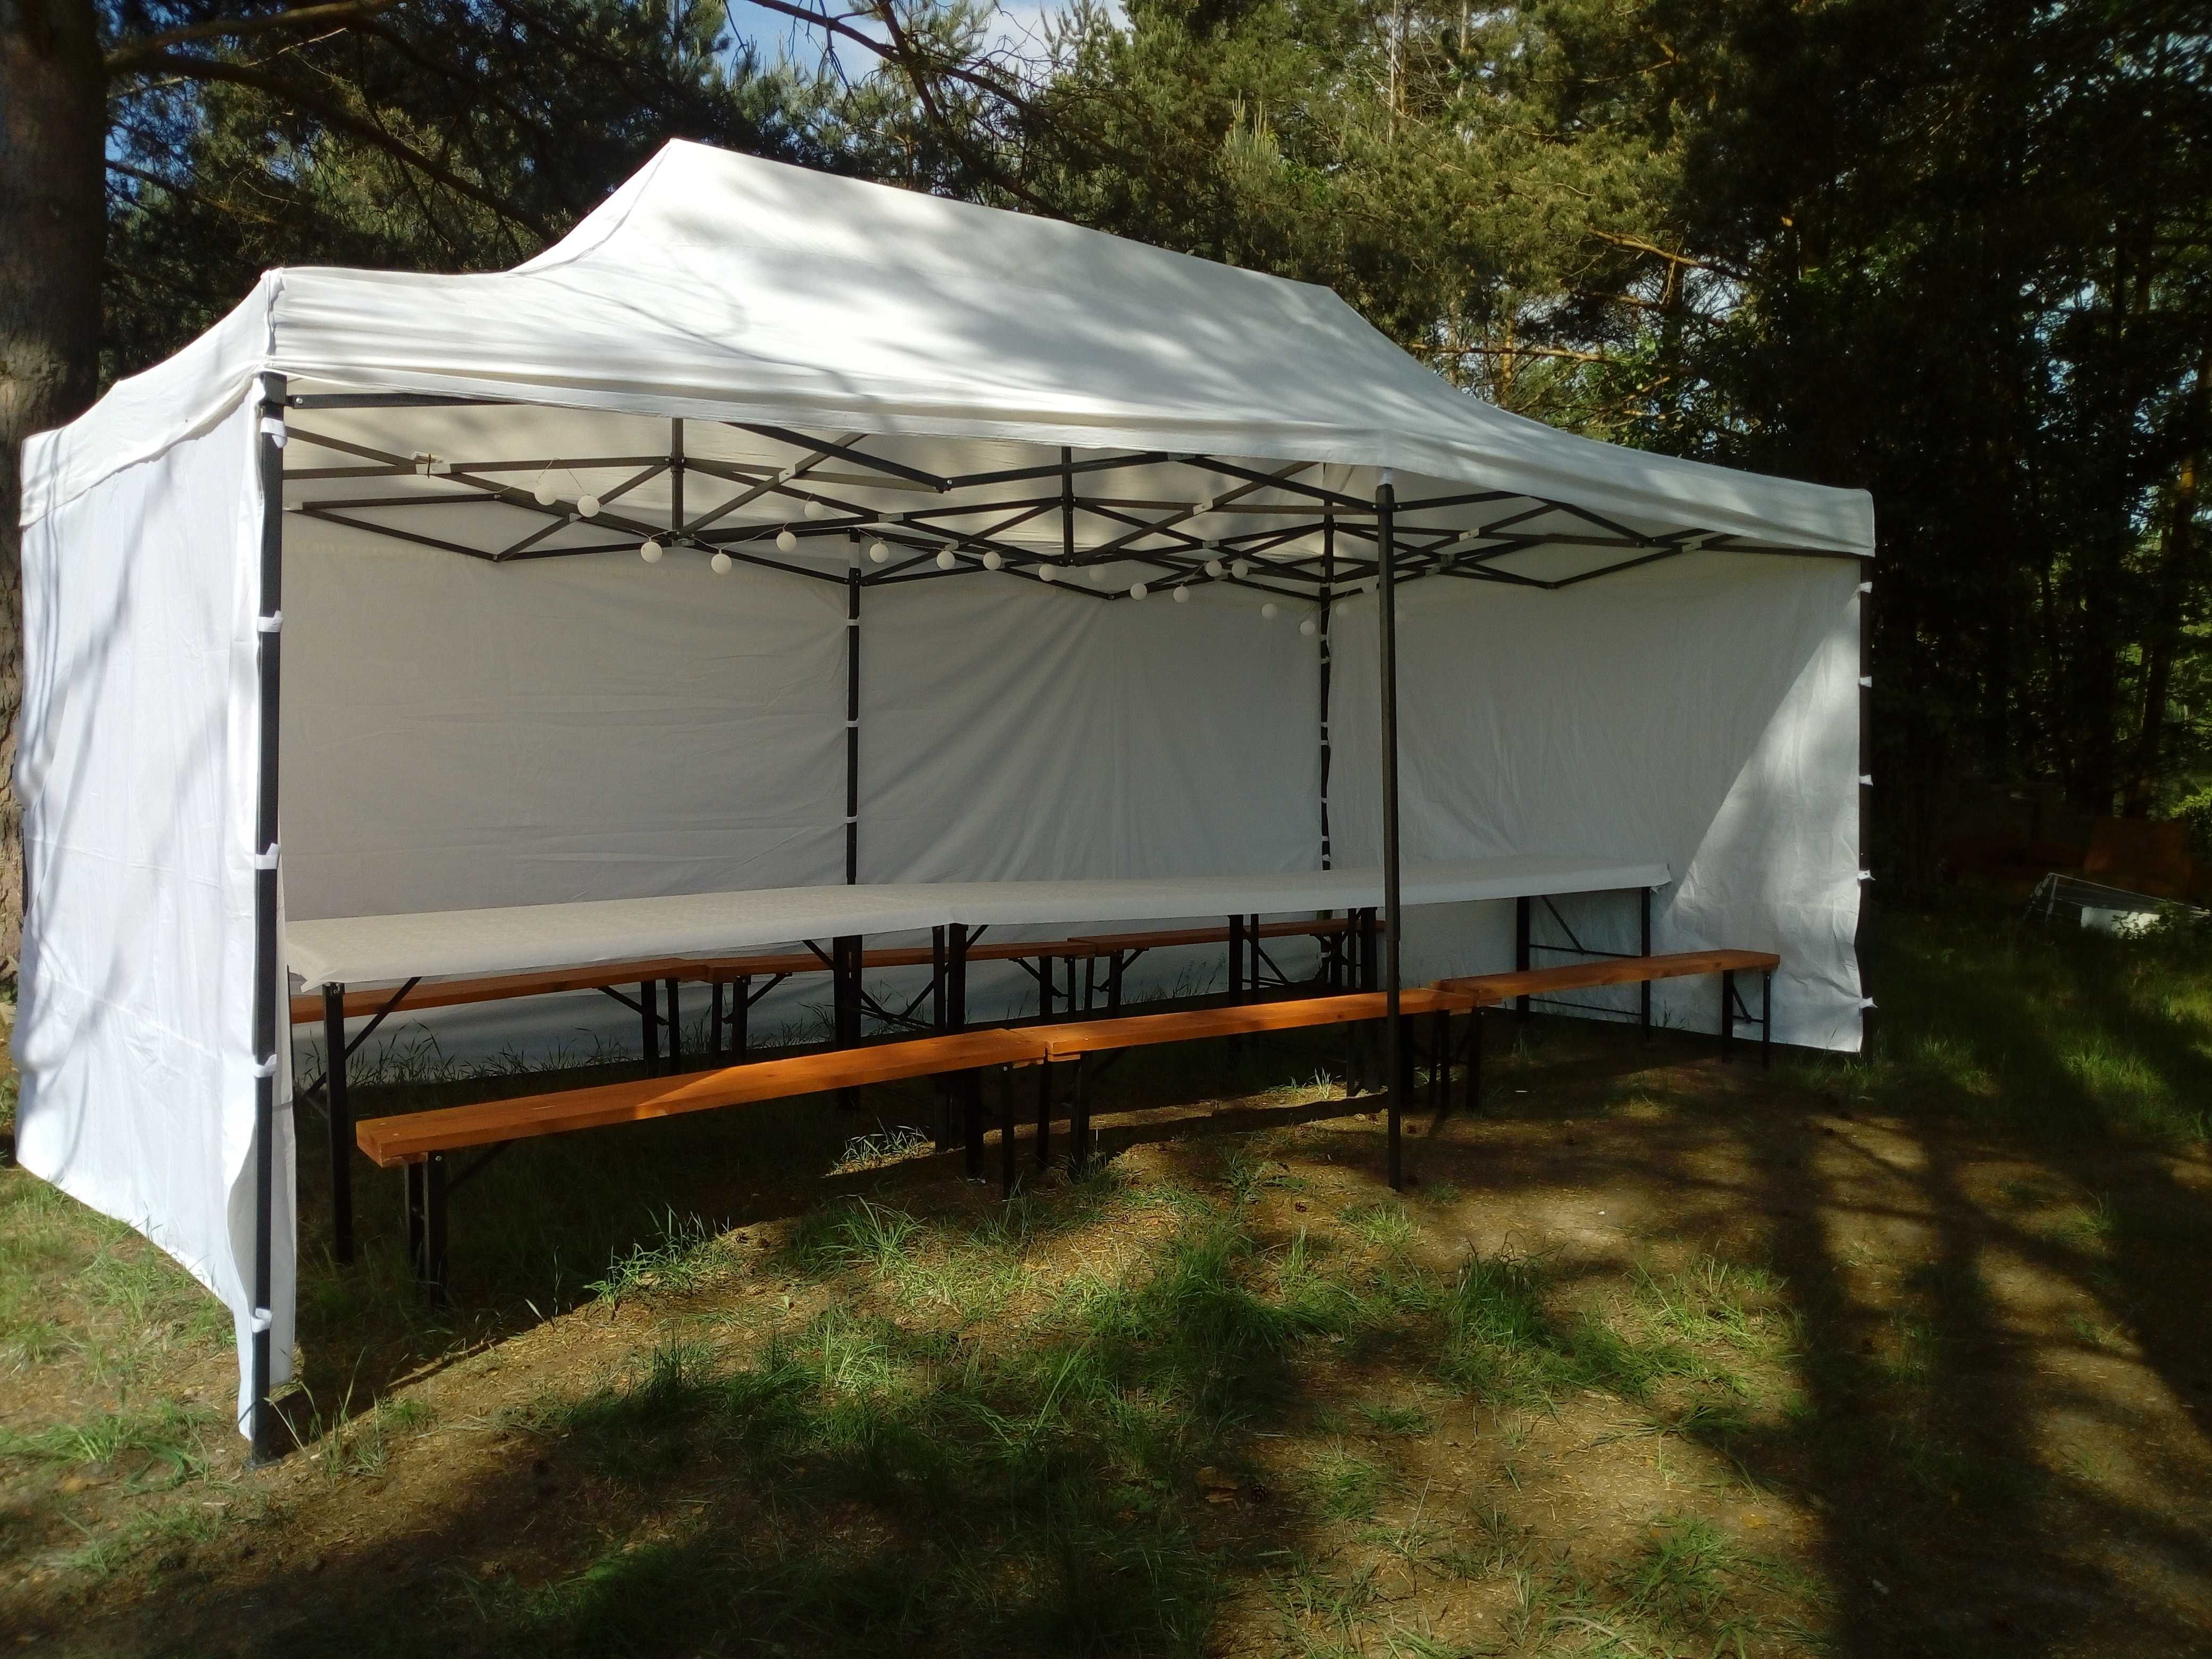 Imprezy w plenerze wynajem namiotów stołów i ławek nagłośnienie gril